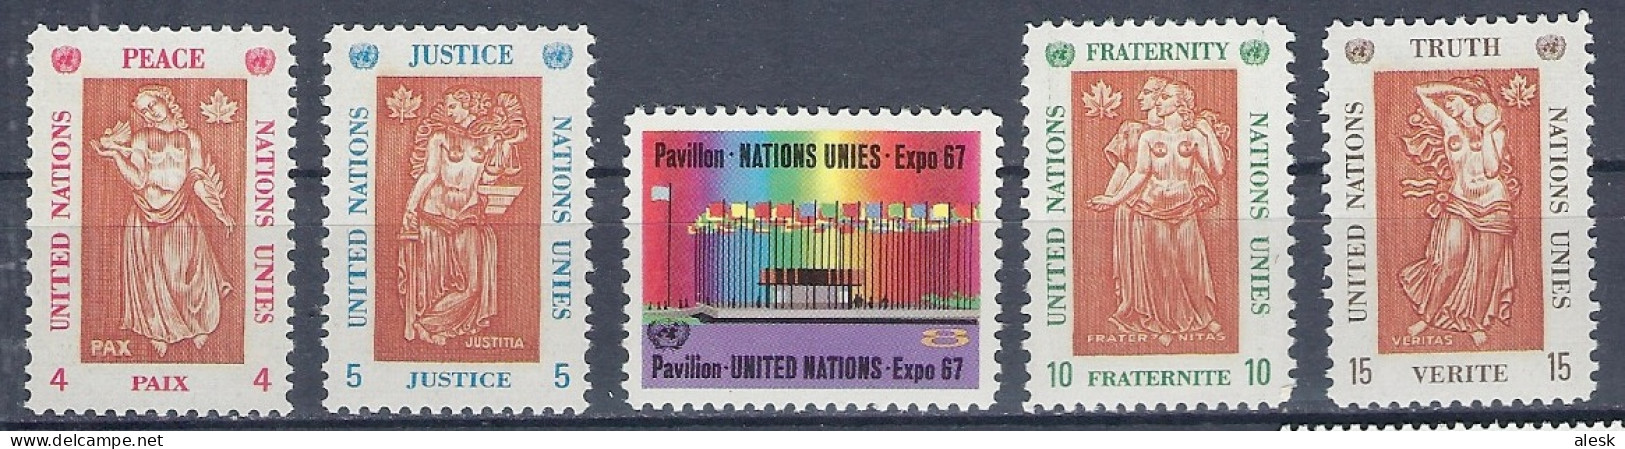 NATIONS-UNIES New-York 1967 - Série N°165 à 169 (y&t) - Exposition Montréal - Paix - Justice - Fraternité - Vérité - Neufs